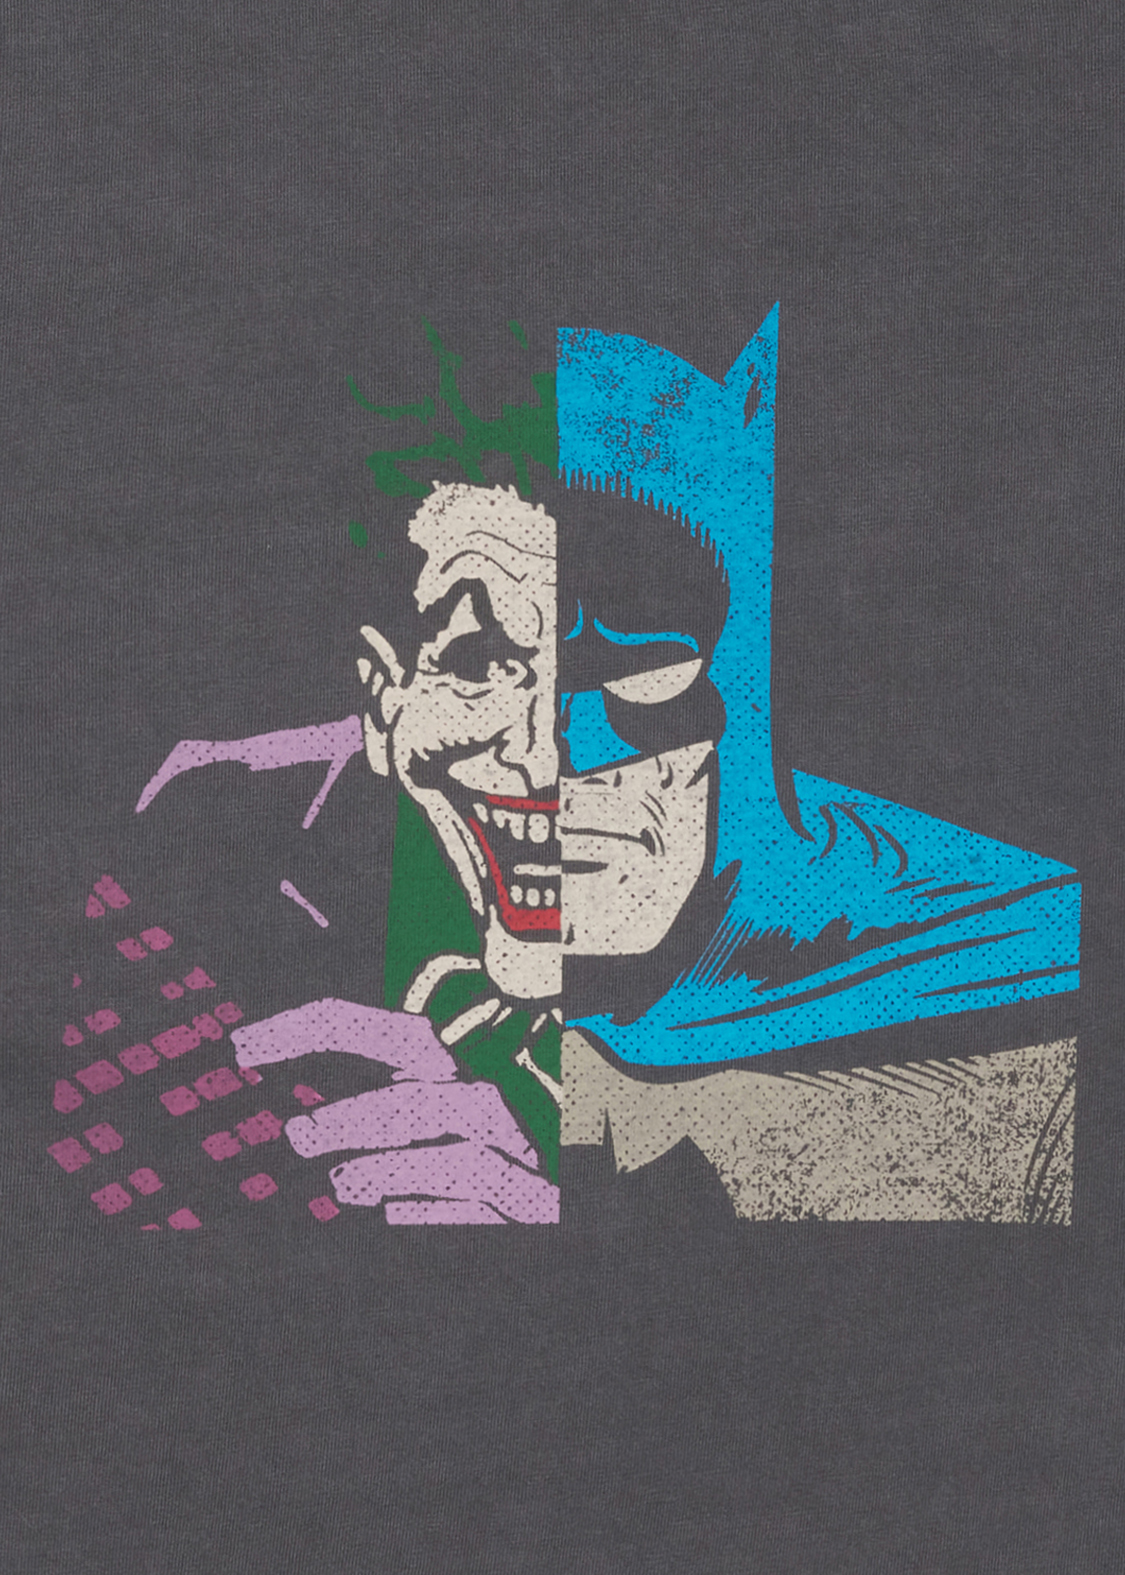 グラニフ「バットマン コラボレーション」 5分袖Tシャツ「ハーフフェイス」デザインアップ